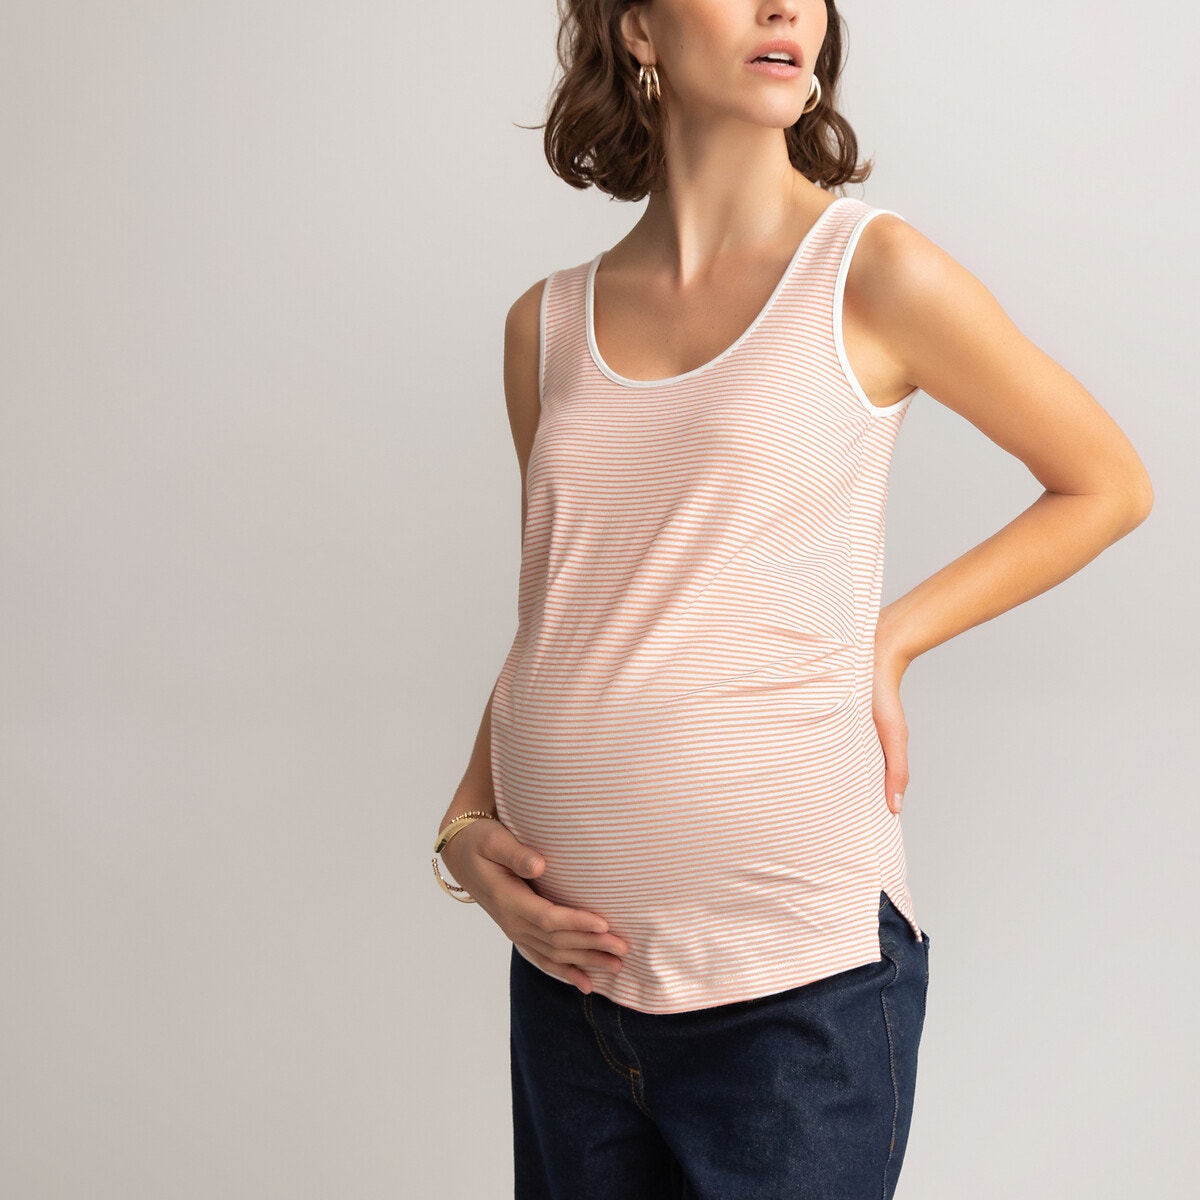 ΓΥΝΑΙΚΑ | Ρούχα Εγκυμοσύνης | Μπλούζες & Πουκάμισα | Τοπ Σετ 2 αμάνικες μπλούζες εγκυμοσύνης από βιολογικό βαμβάκι